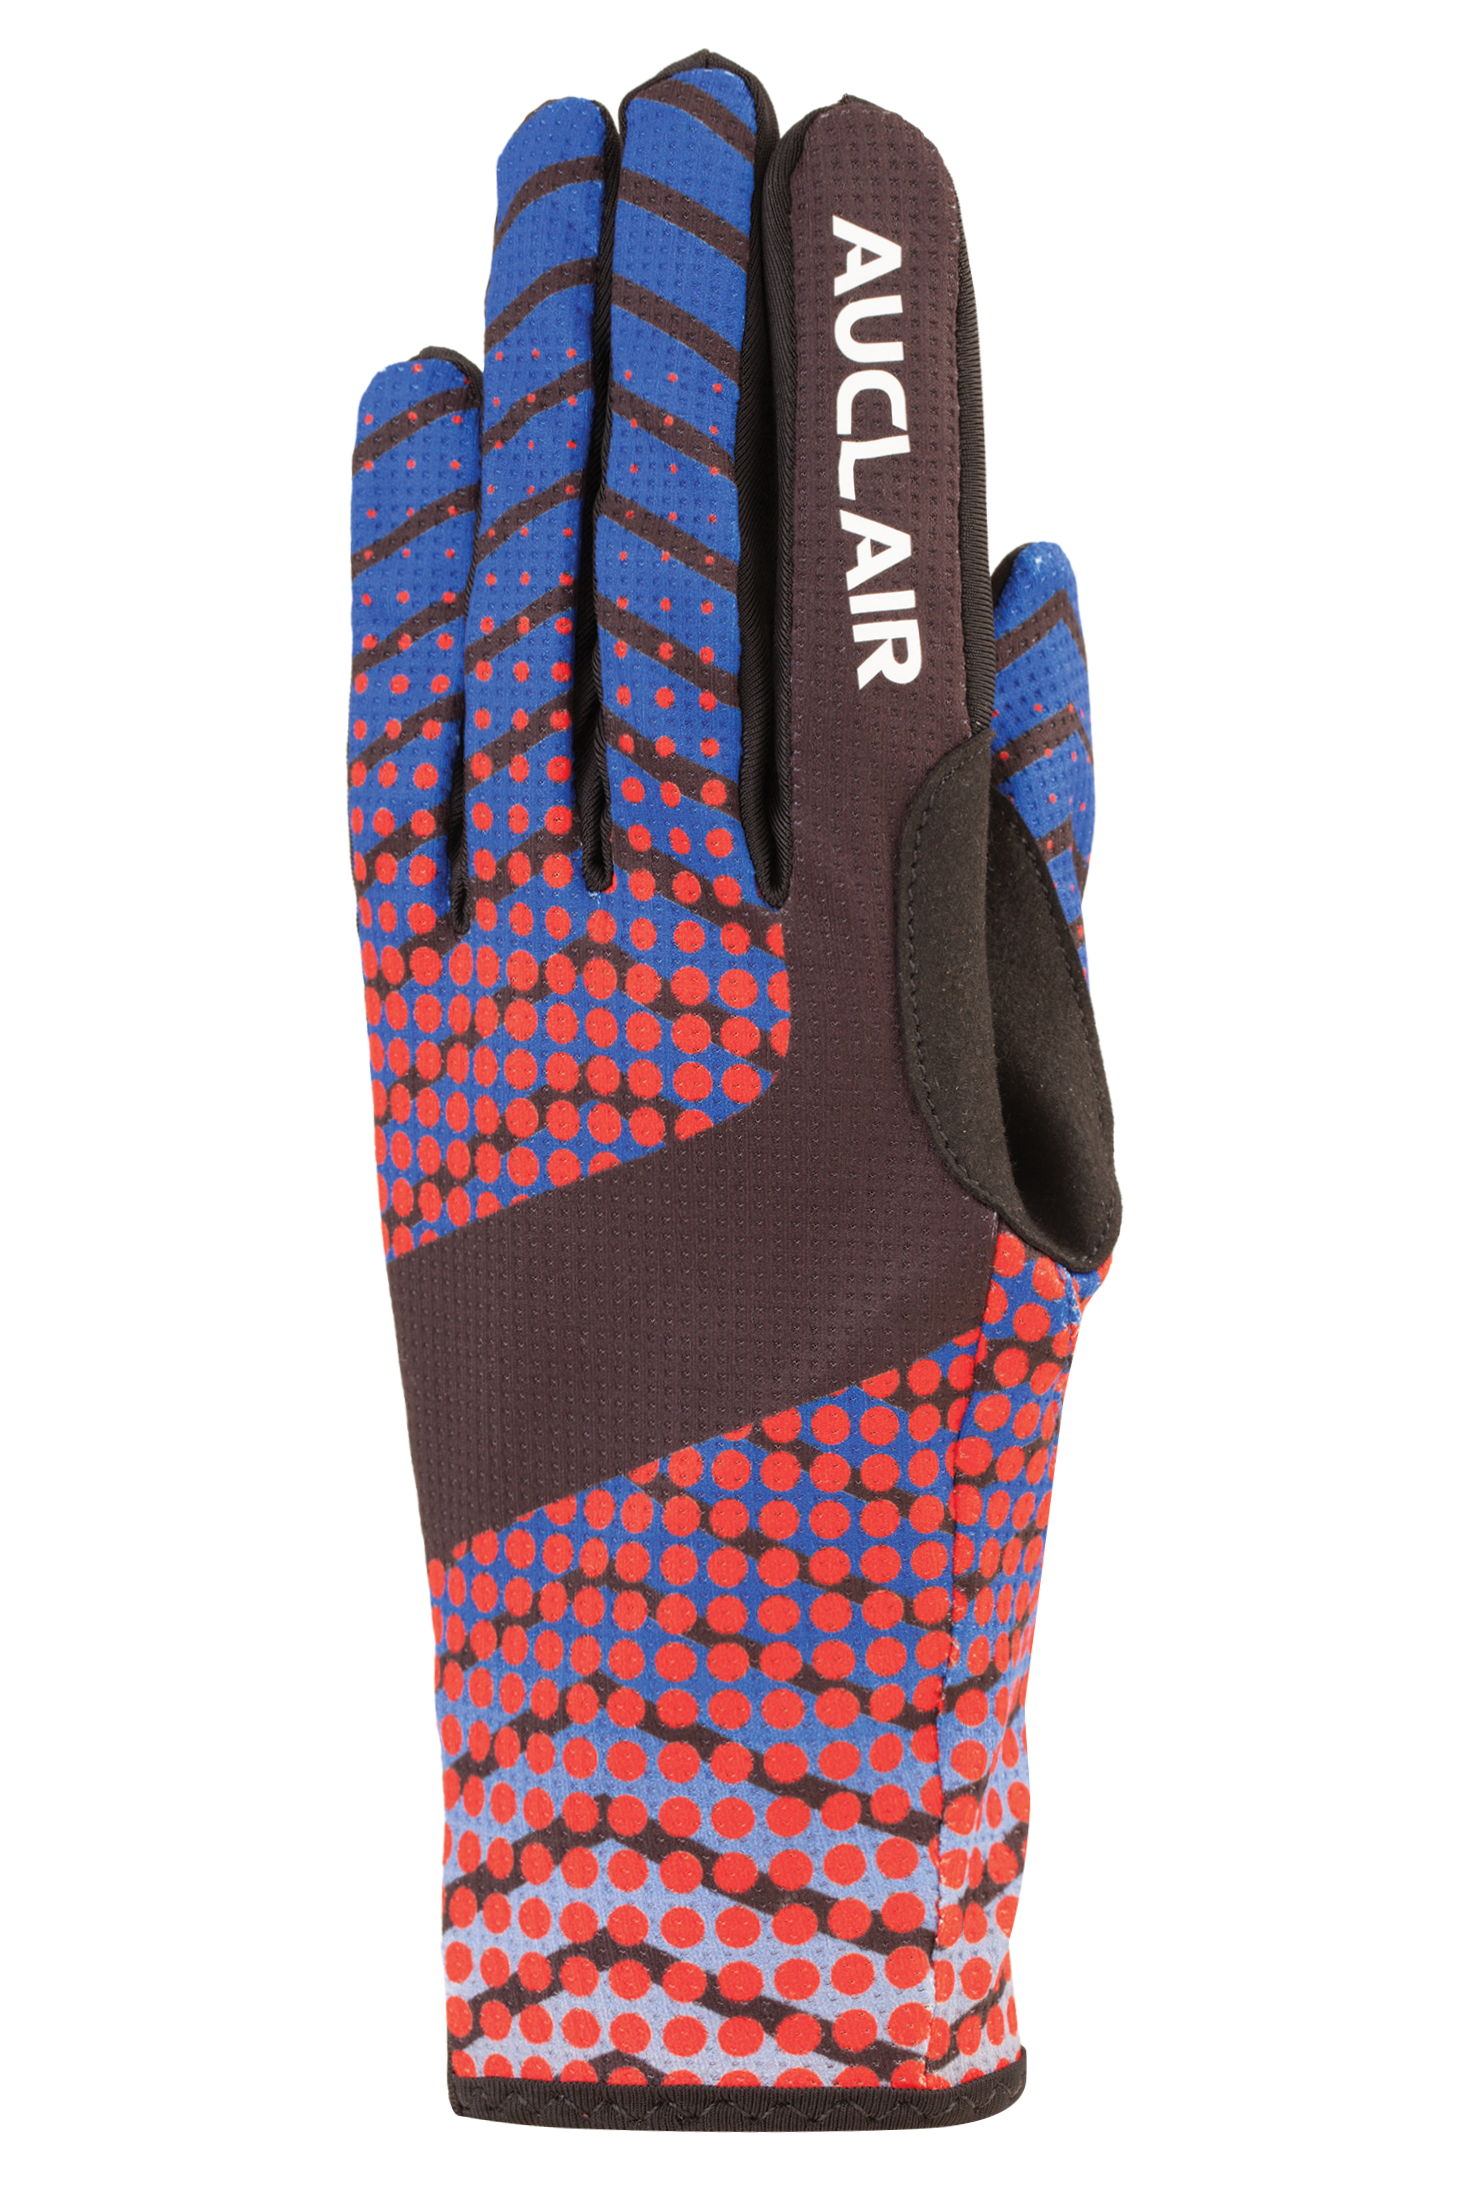 High Roller 2 Gloves - Adult, Black/Blue/Red